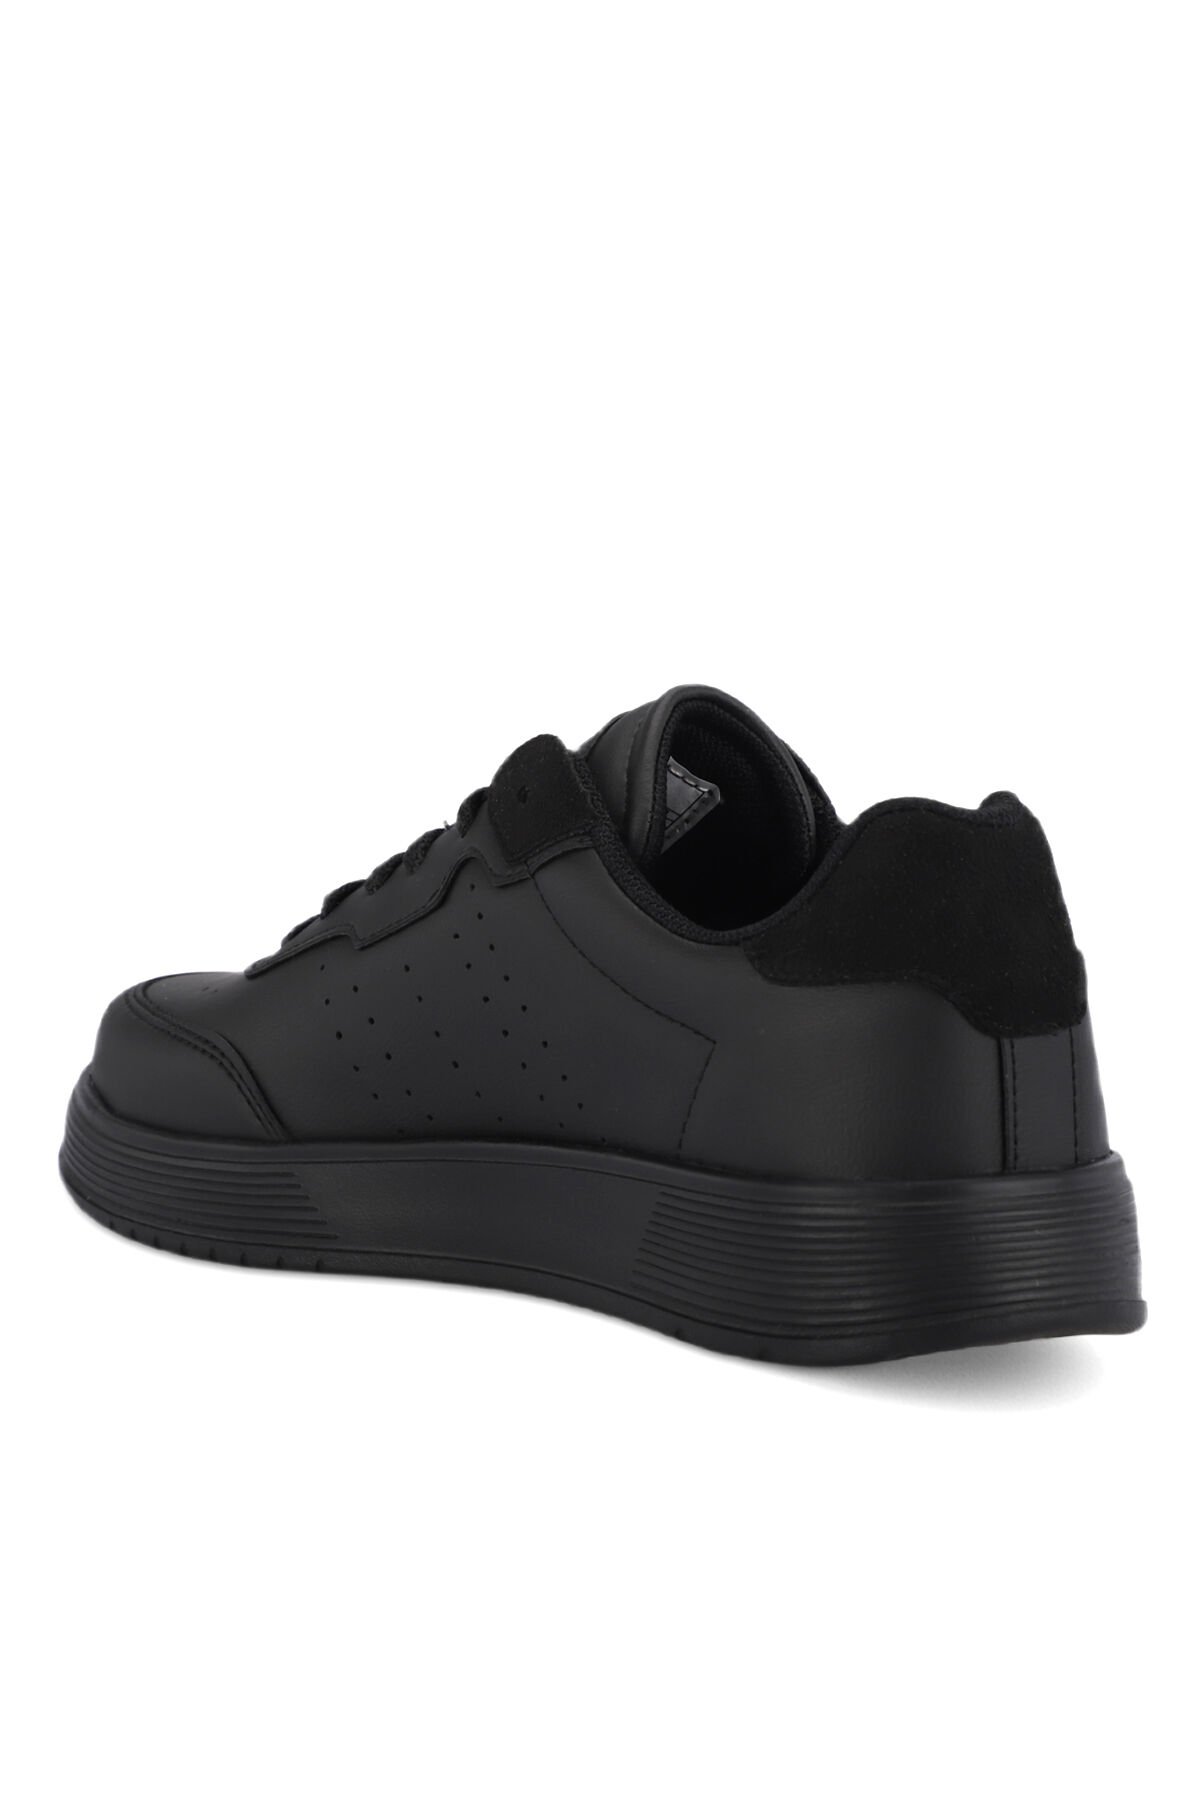 ZEKKO Sneaker Kadın Ayakkabı Siyah / Siyah - Thumbnail